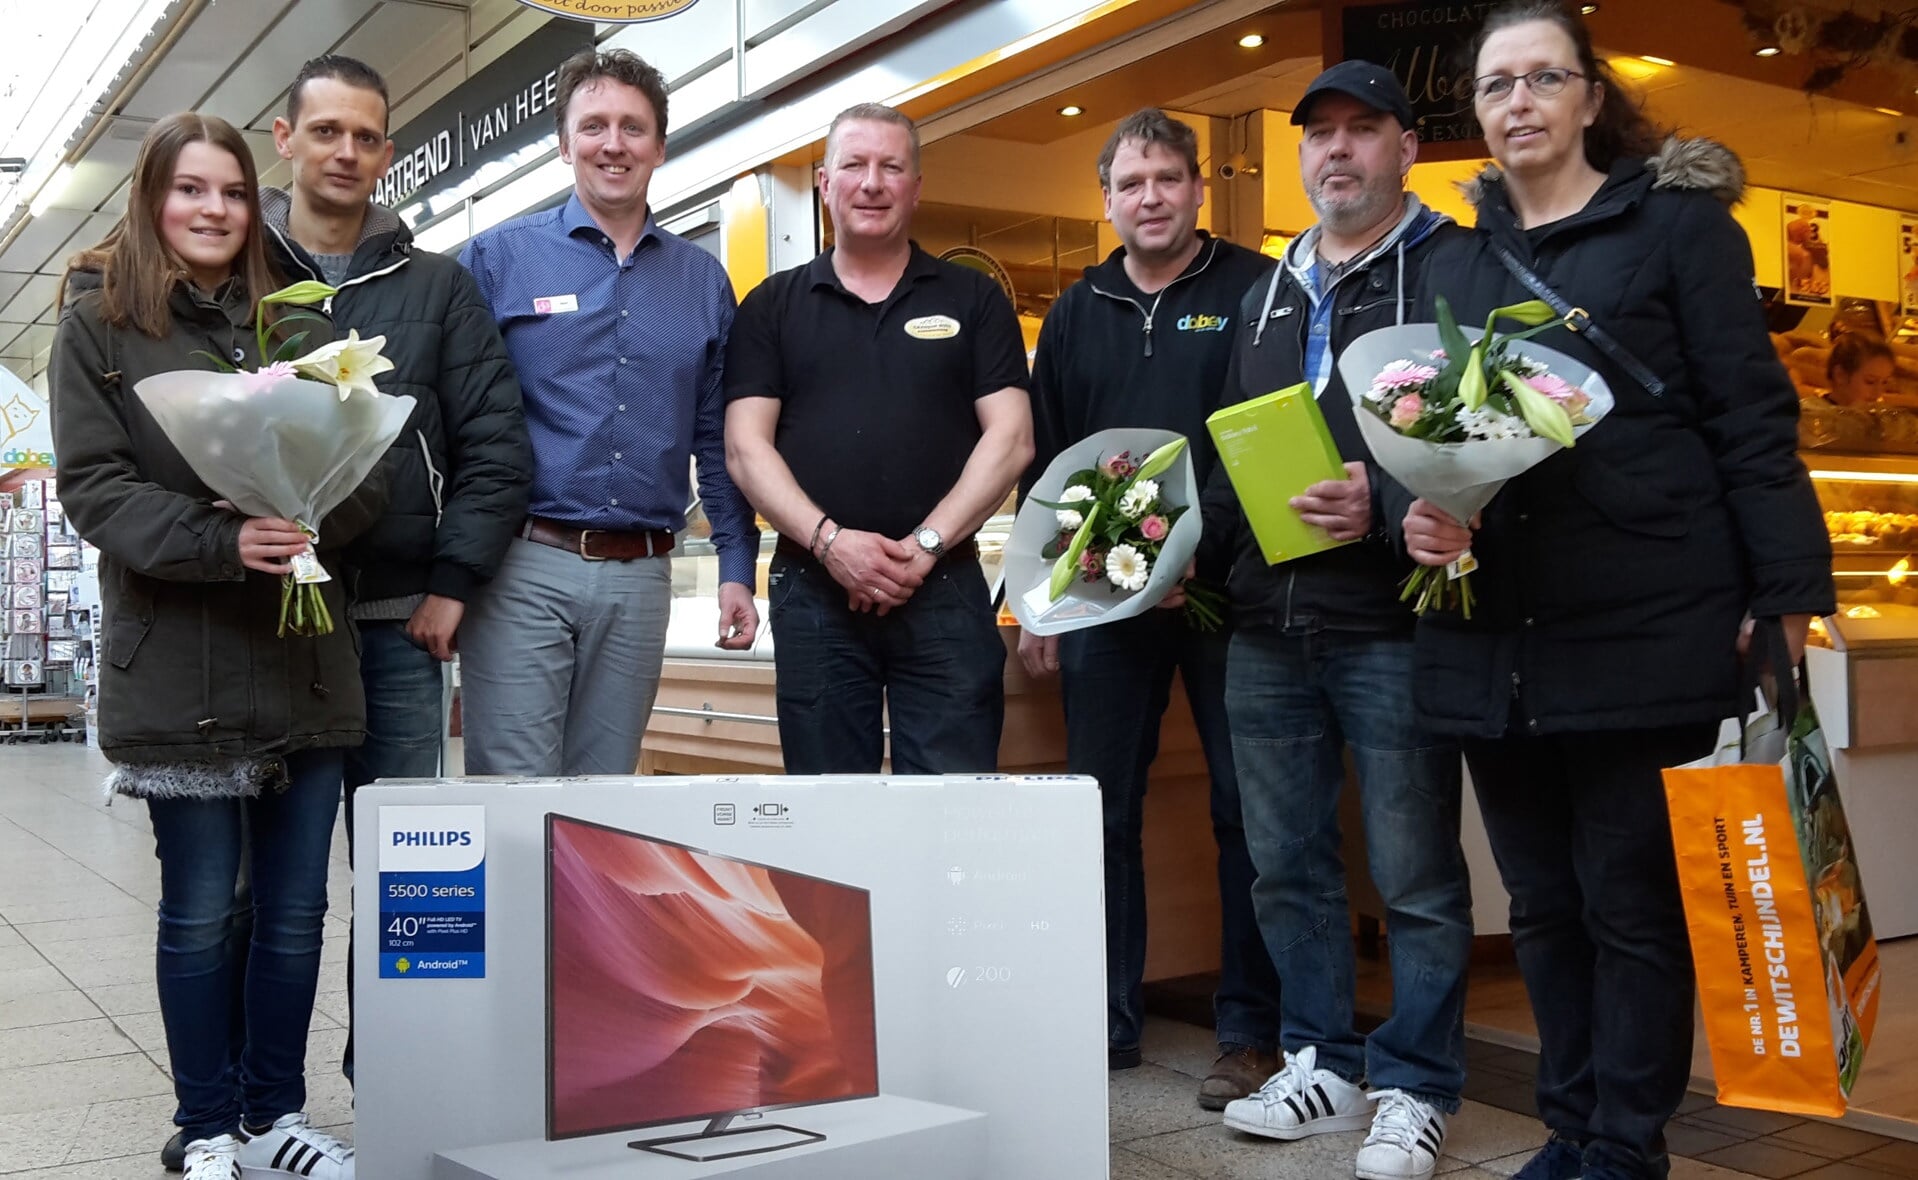 De winnaars van de Prijzenexplosie in maart flankeren drie bestuursleden van winkeliersvereniging Oosterhof. V.l.n.r. Esmée en Renier van den Brandt, Marc van den Biggelaar, Gradjan Buss, Hans van Erp, Henri Becx en Hannie van Wanrooij. (Foto: Henk van Weert). 